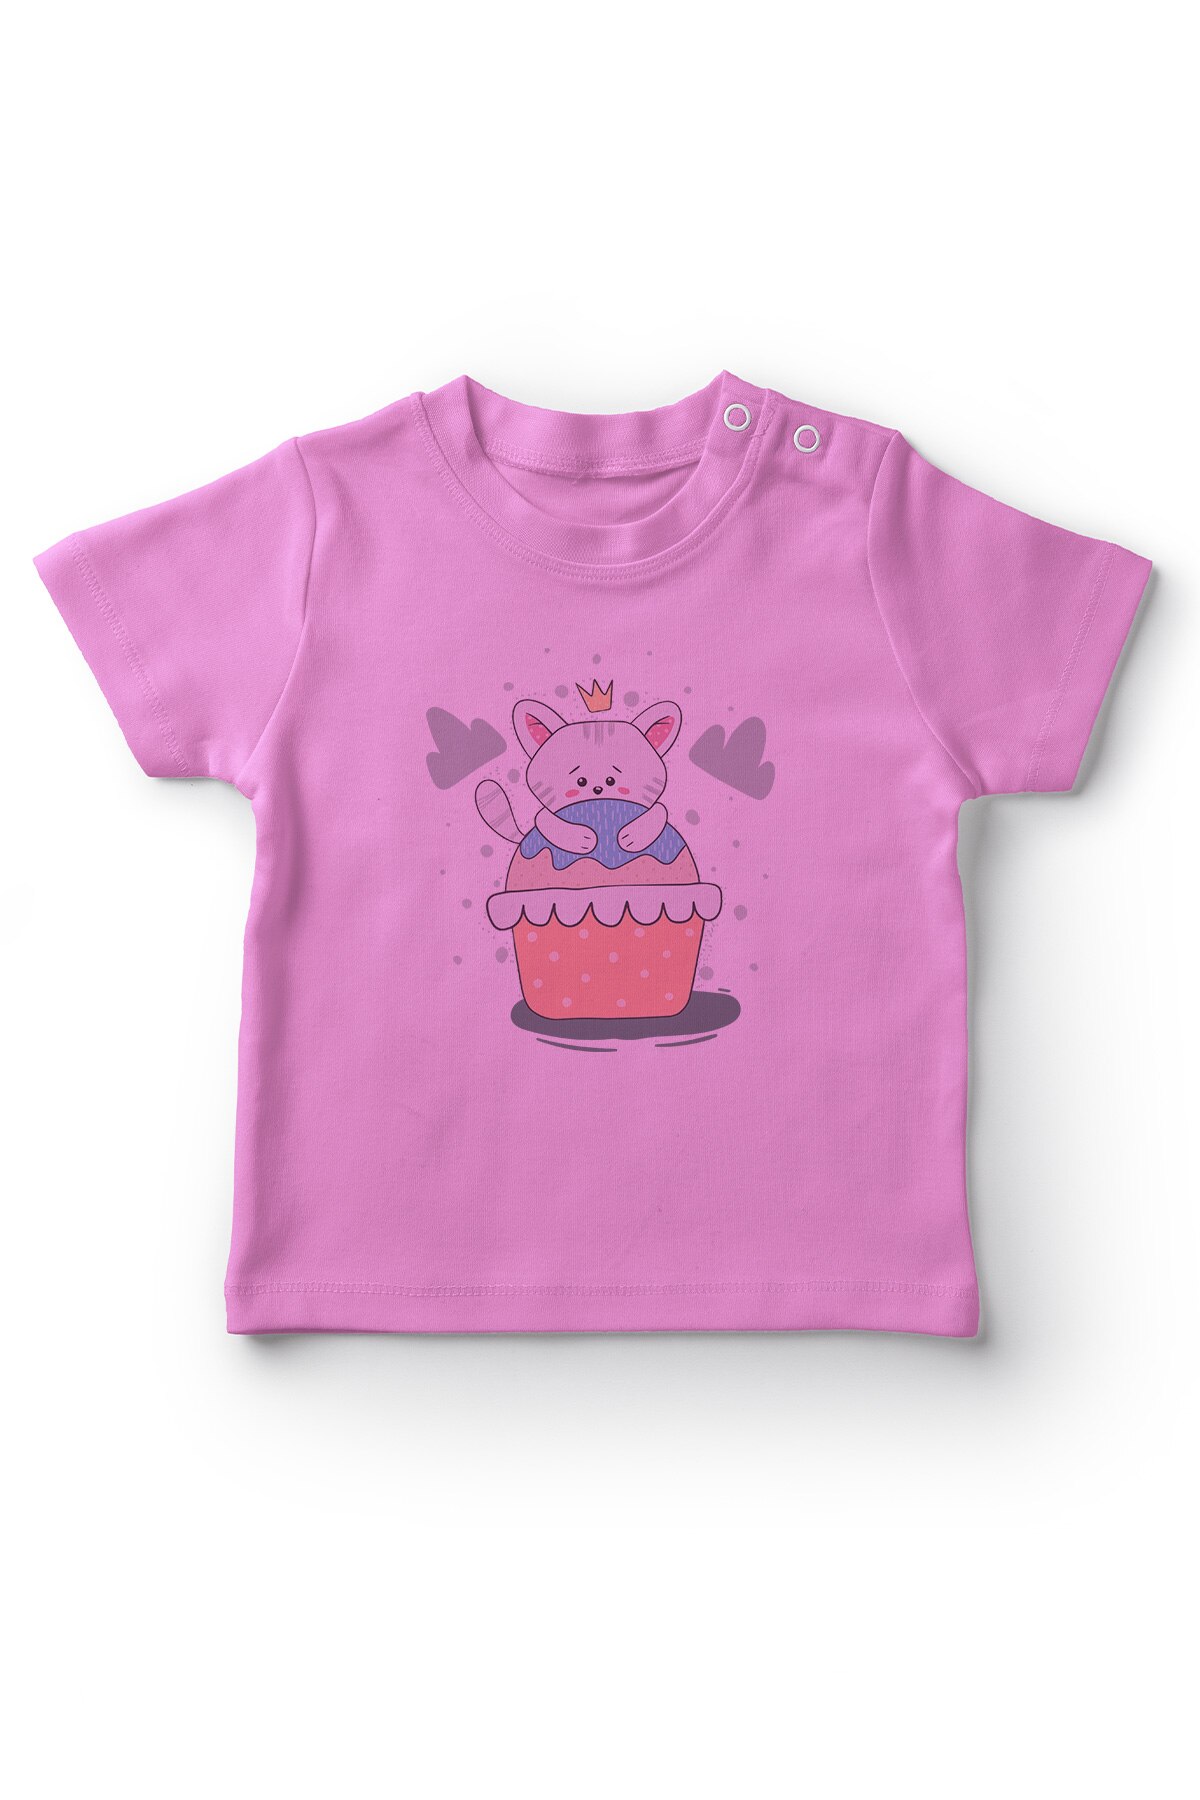 Angemiel Baby Cake Op Kat Baby Meisje T-shirt Roze